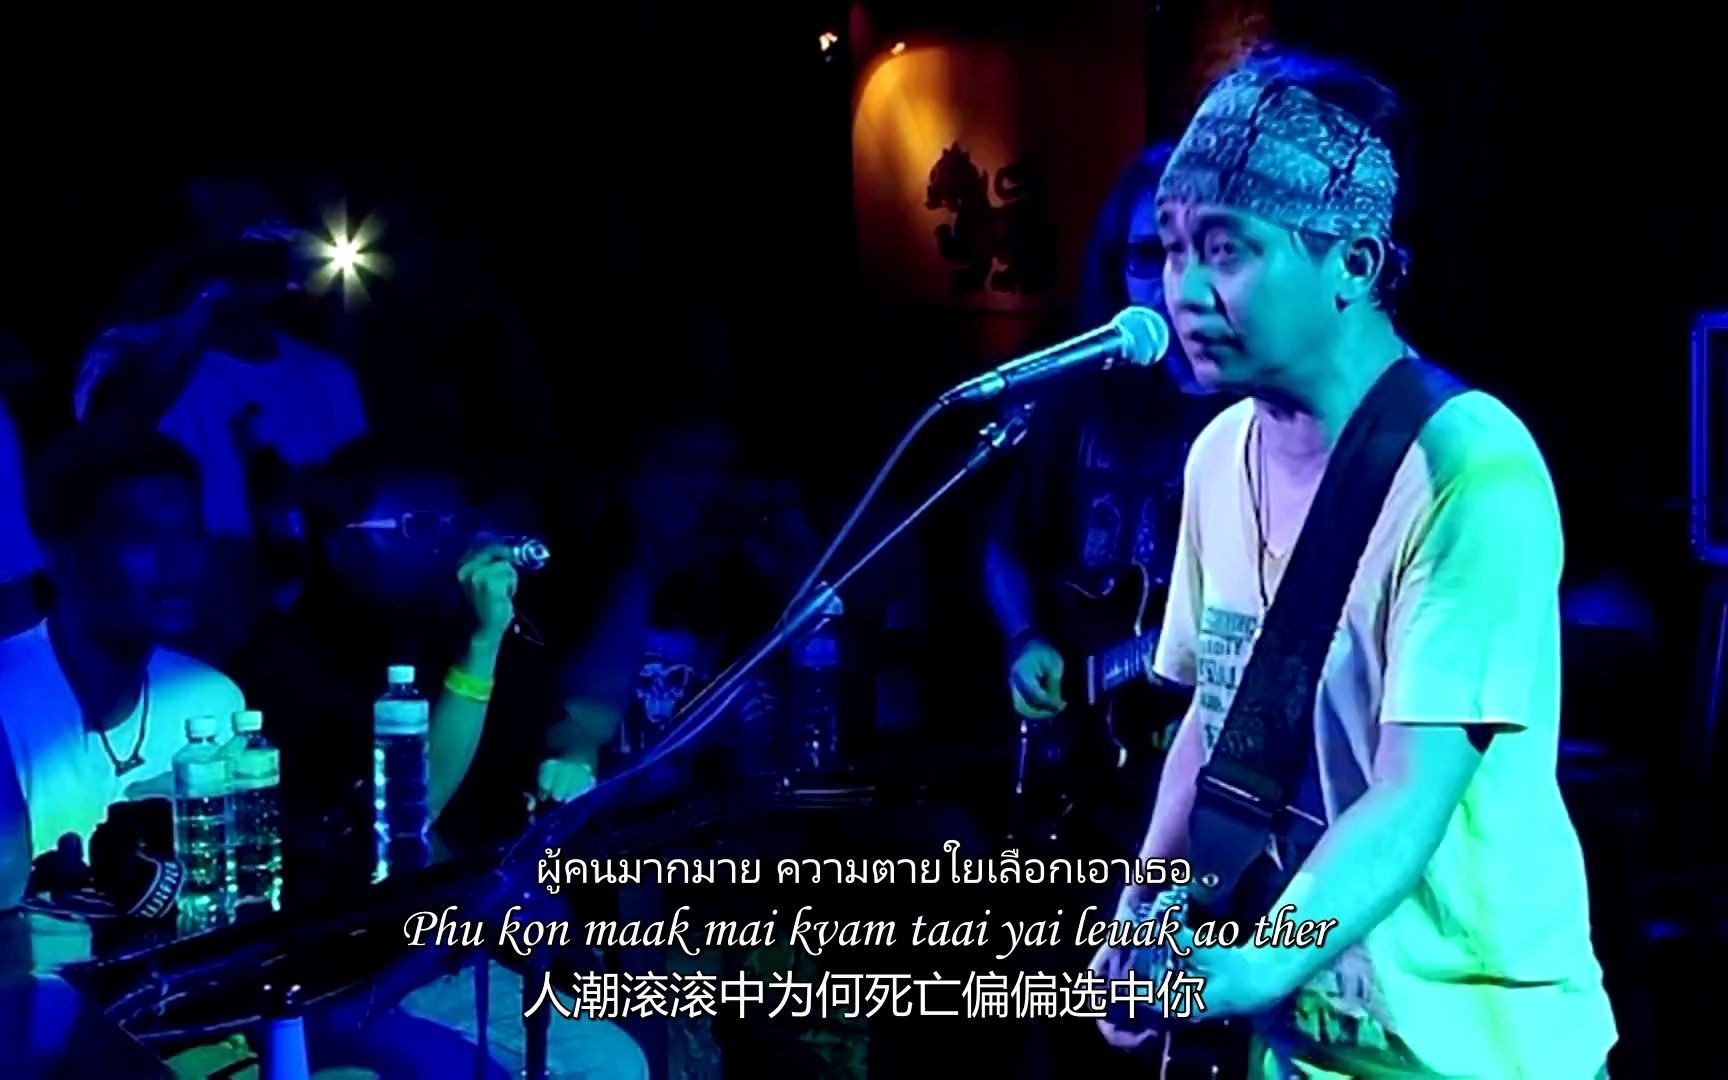 [中英泰字] 在这里-อยู่ตรงนี้-พงษ์สิทธิ์ คำภีร์-Pongsit Kamphee 摇滚现场Live -2011